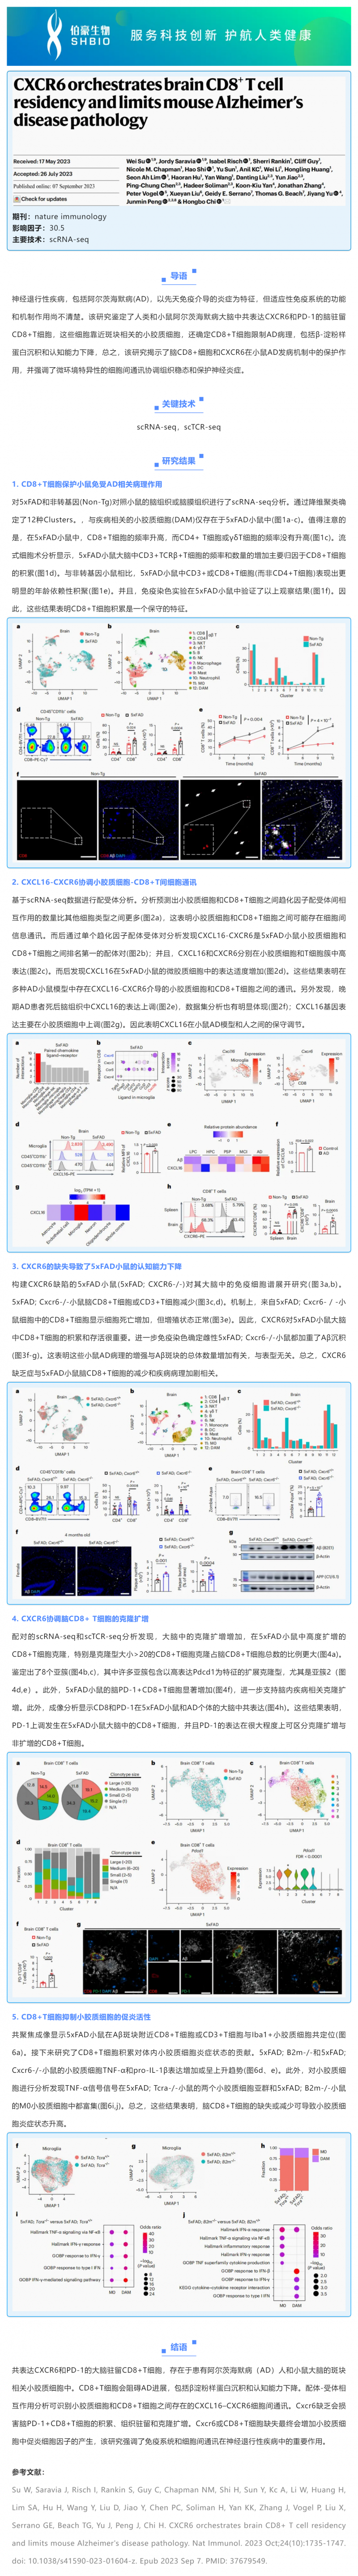 文献解读 _ CXCR6 和 CD8+ T 细胞在小鼠 AD 发病机制中的作用